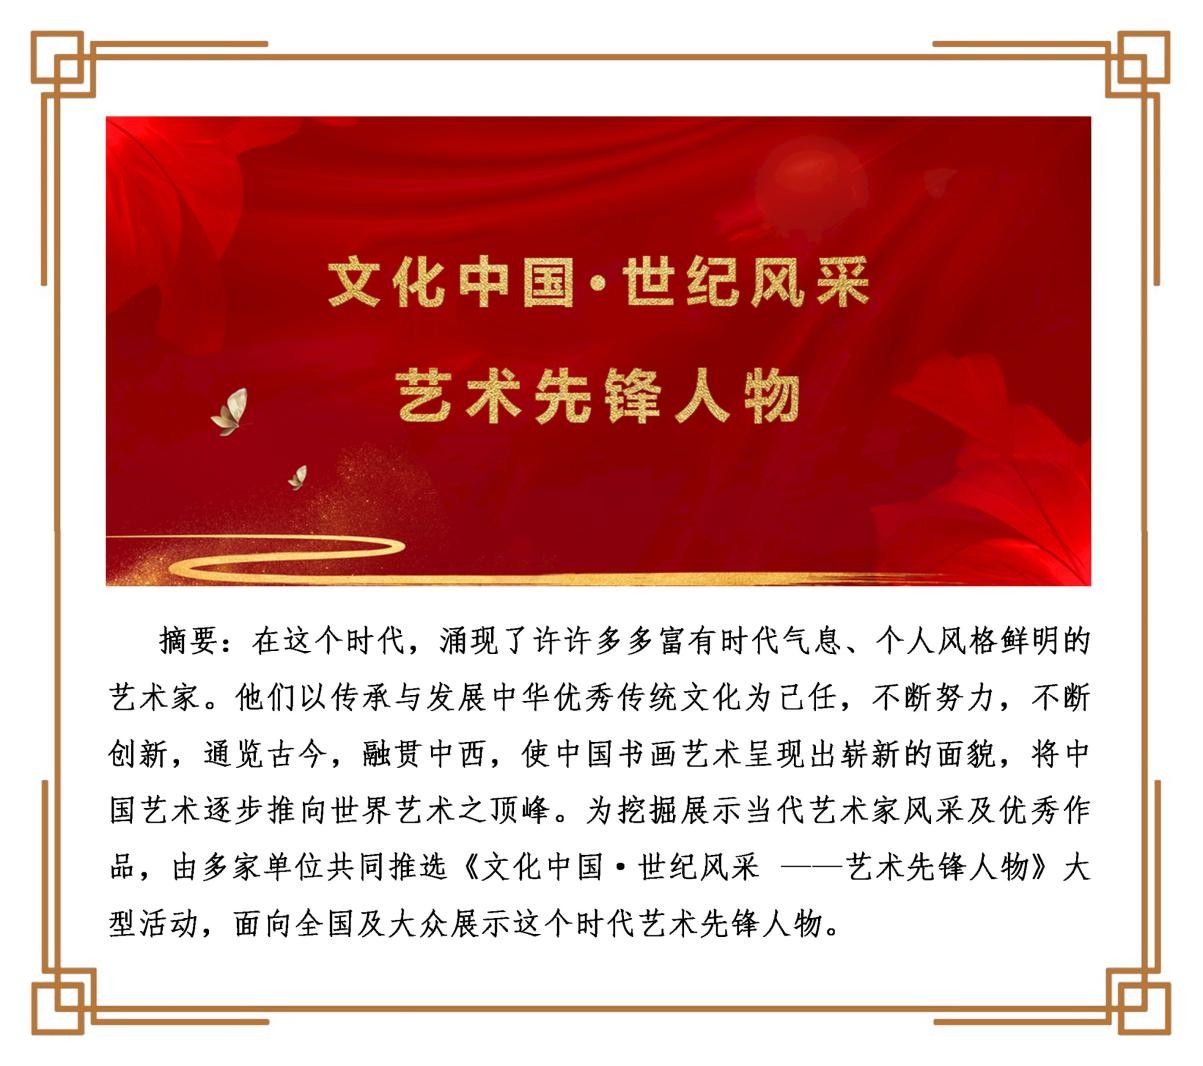 《文化中国·世纪风采》——艺术先锋人物李吉晖